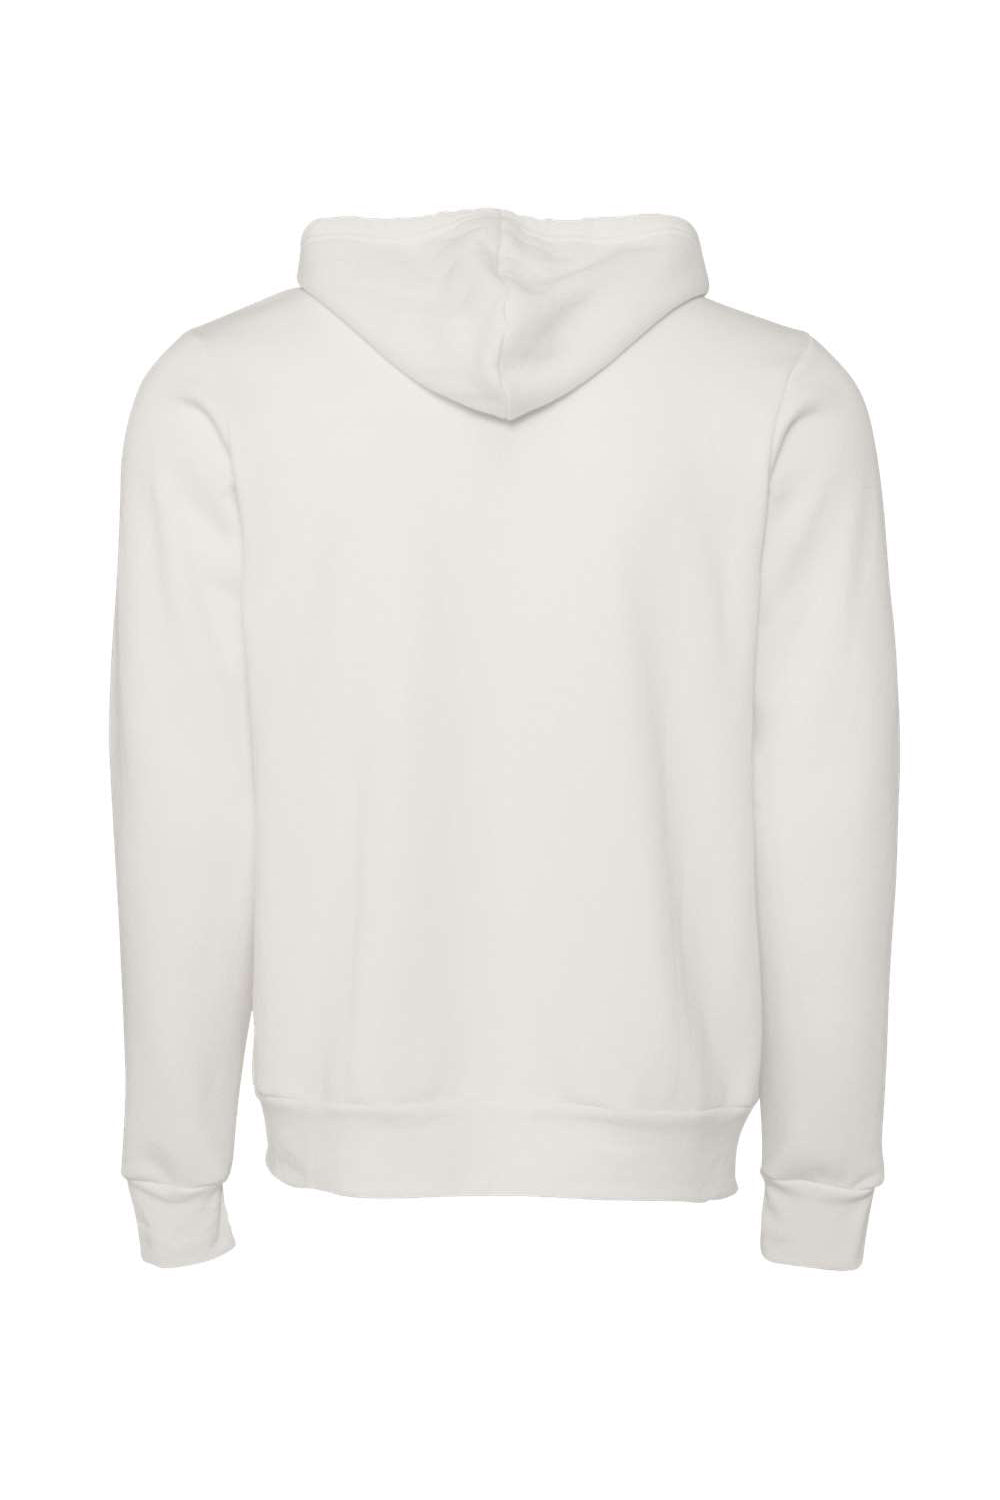 Bella + Canvas BC3739/3739 Mens Fleece Full Zip Hooded Sweatshirt Hoodie Vintage White Flat Back